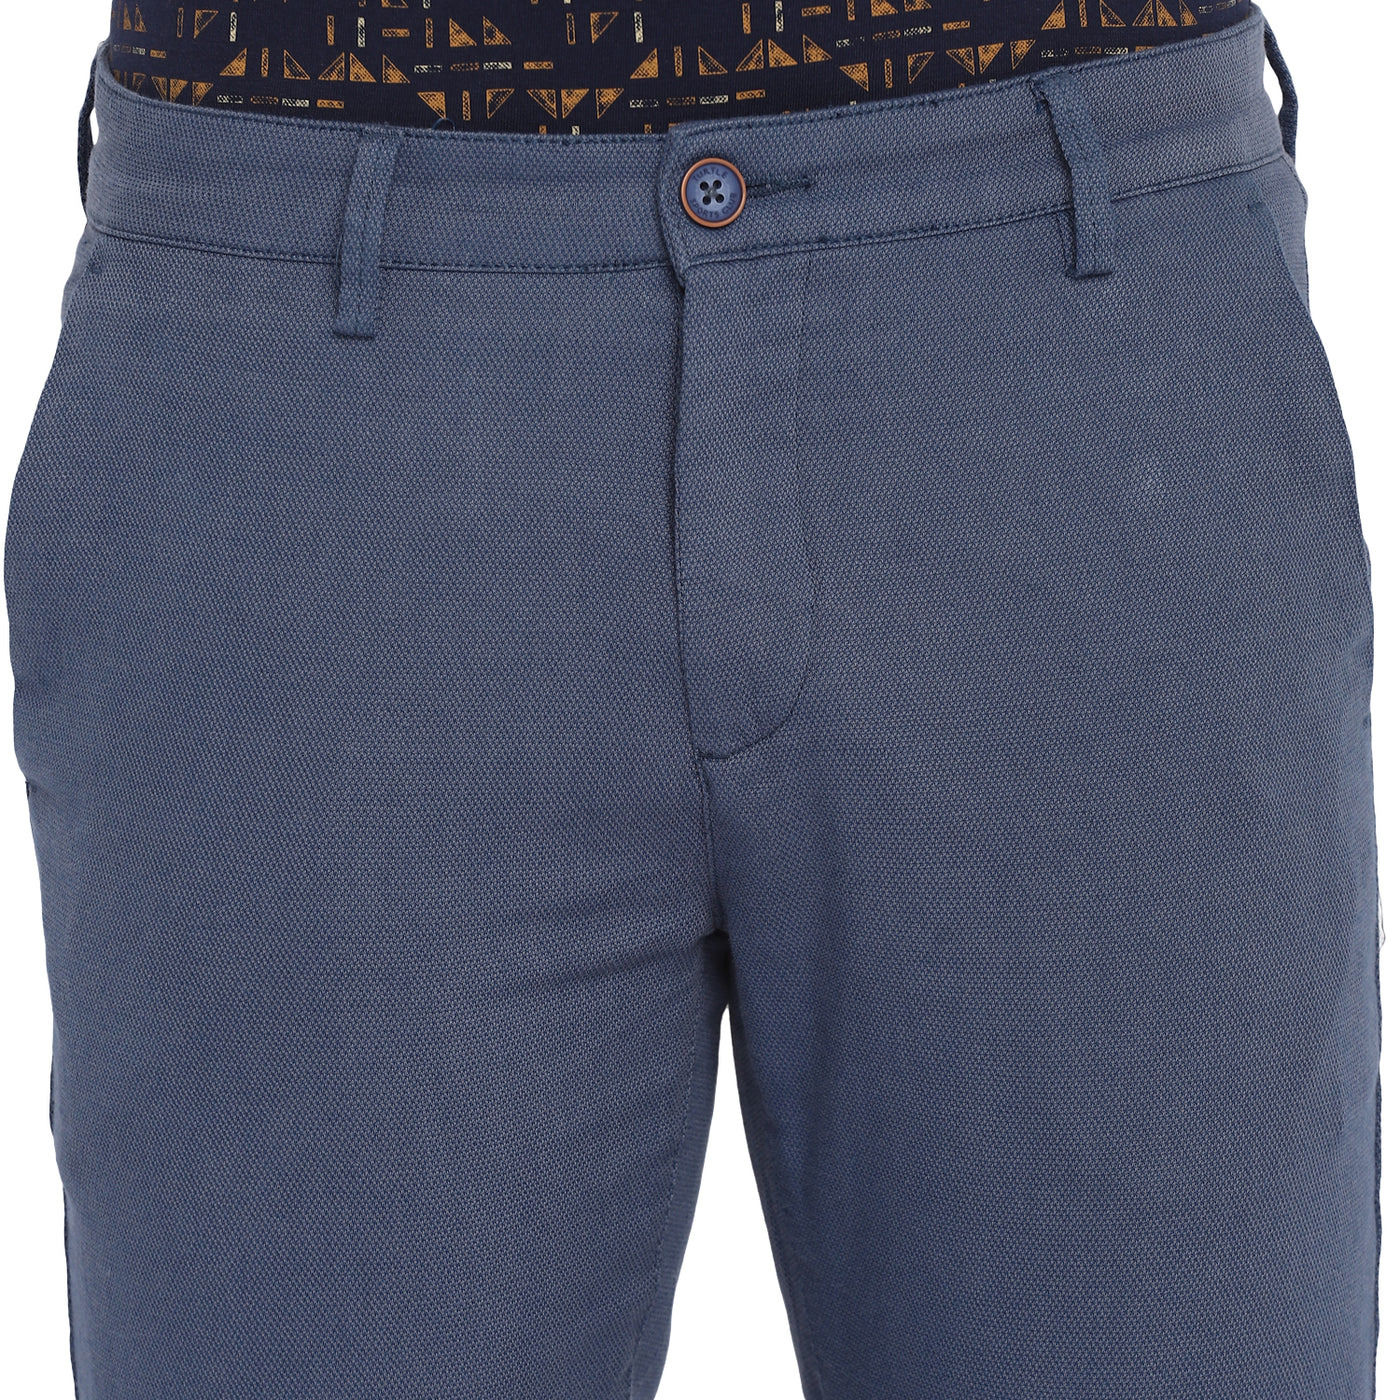 Blue Self Design Cotton Stretch Ultra Slim Fit Casual Trouser